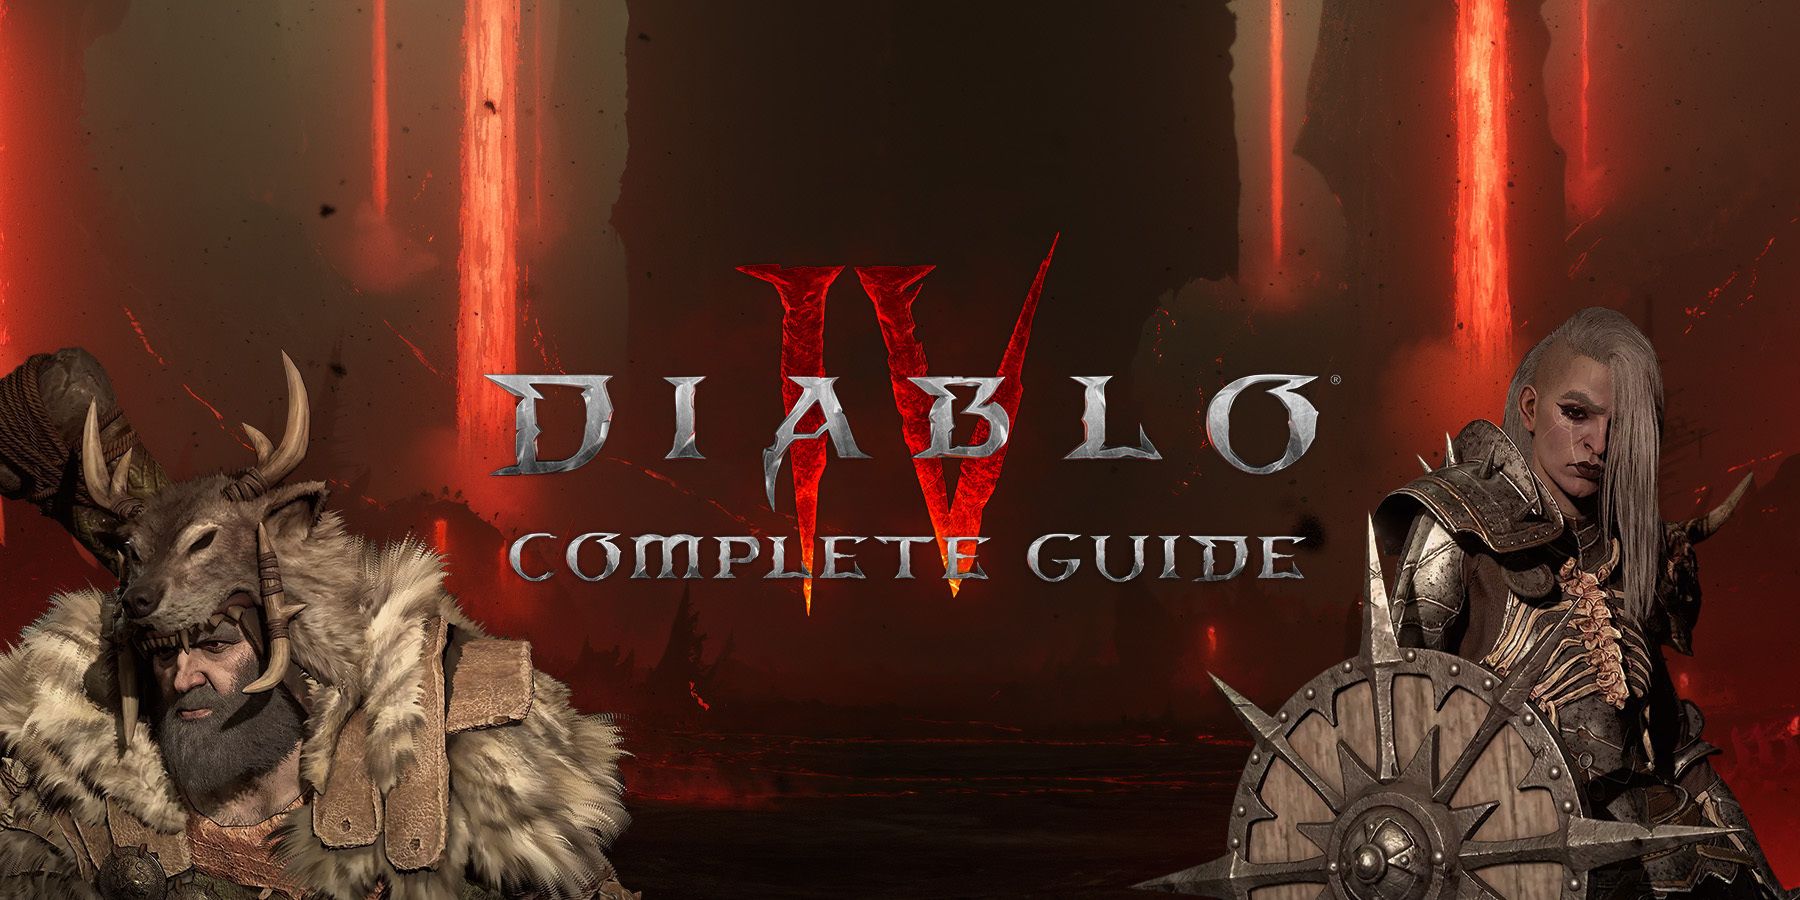 How to fix Online Play is Blocked Error Code 300031 in Diablo 4